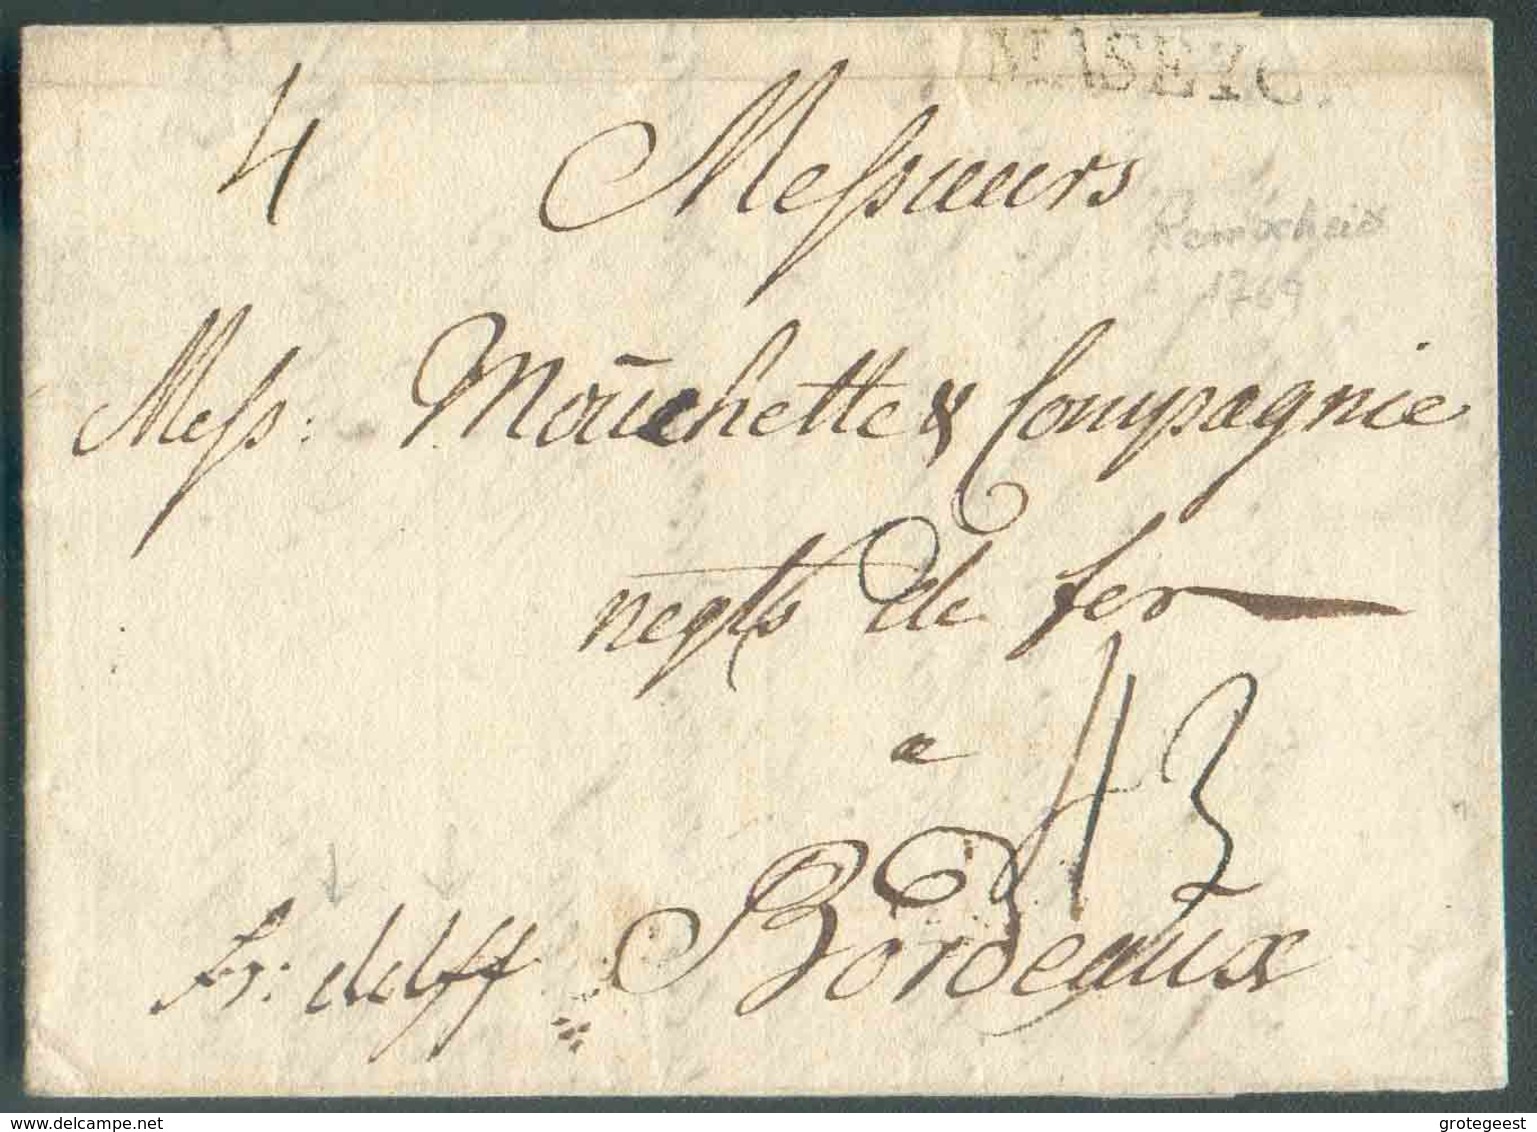 LAC Datée De REMSCHEID Le 16 Mars 1769 + Griffe MASEYCK Et Manuscrit 'fr.dslff' (franco Dusseldorff) Vers Bordeaux; Port - 1714-1794 (Oostenrijkse Nederlanden)